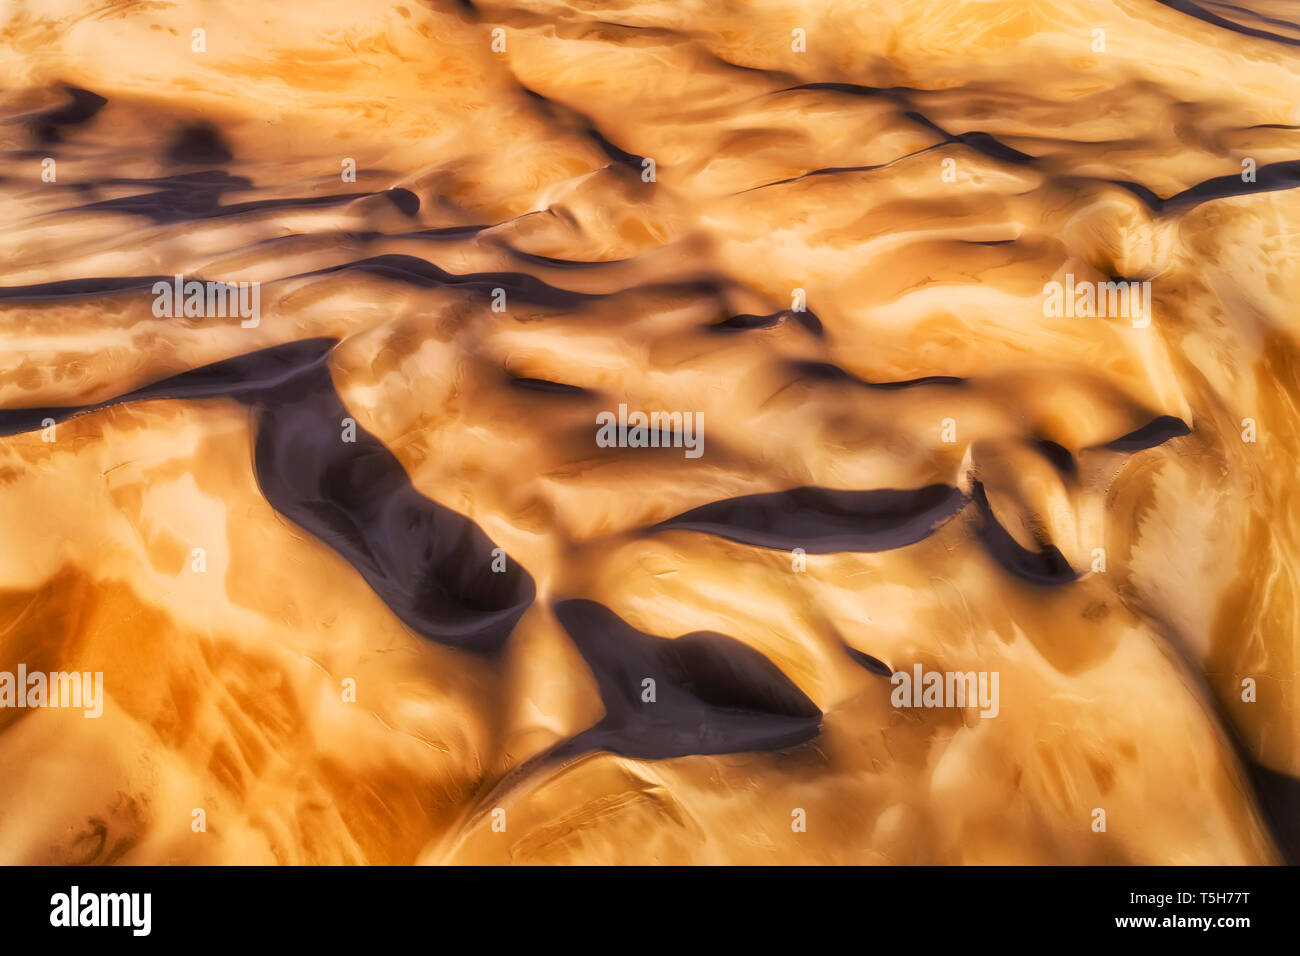 Pliegues de dunas de arena visto desde arriba, de arriba a abajo en la suave luz del sol por la mañana destacando la superficie inerte intanct remota tierra del desierto. Foto de stock